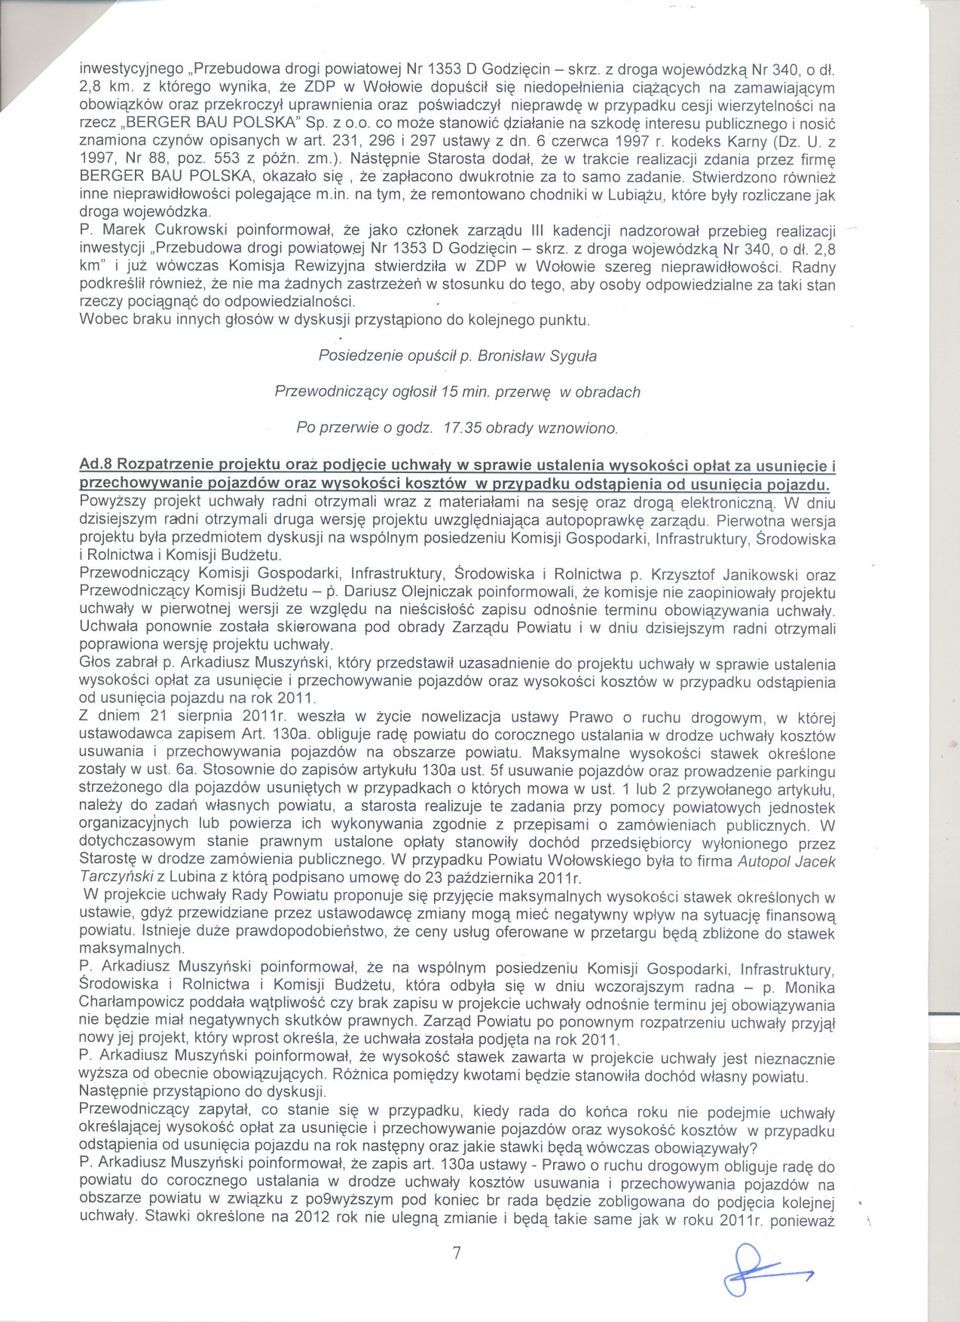 "BERGER BAU POLSKA" Sp. z 0.0. co moze stanowic dzialanie na szkode interesu publicznego i nosic znamiona czynów opisanych wart. 231, 296 i 297 ustawy z dn. 6 czerwca 1997 r. kodeks Karny (Dz. U.